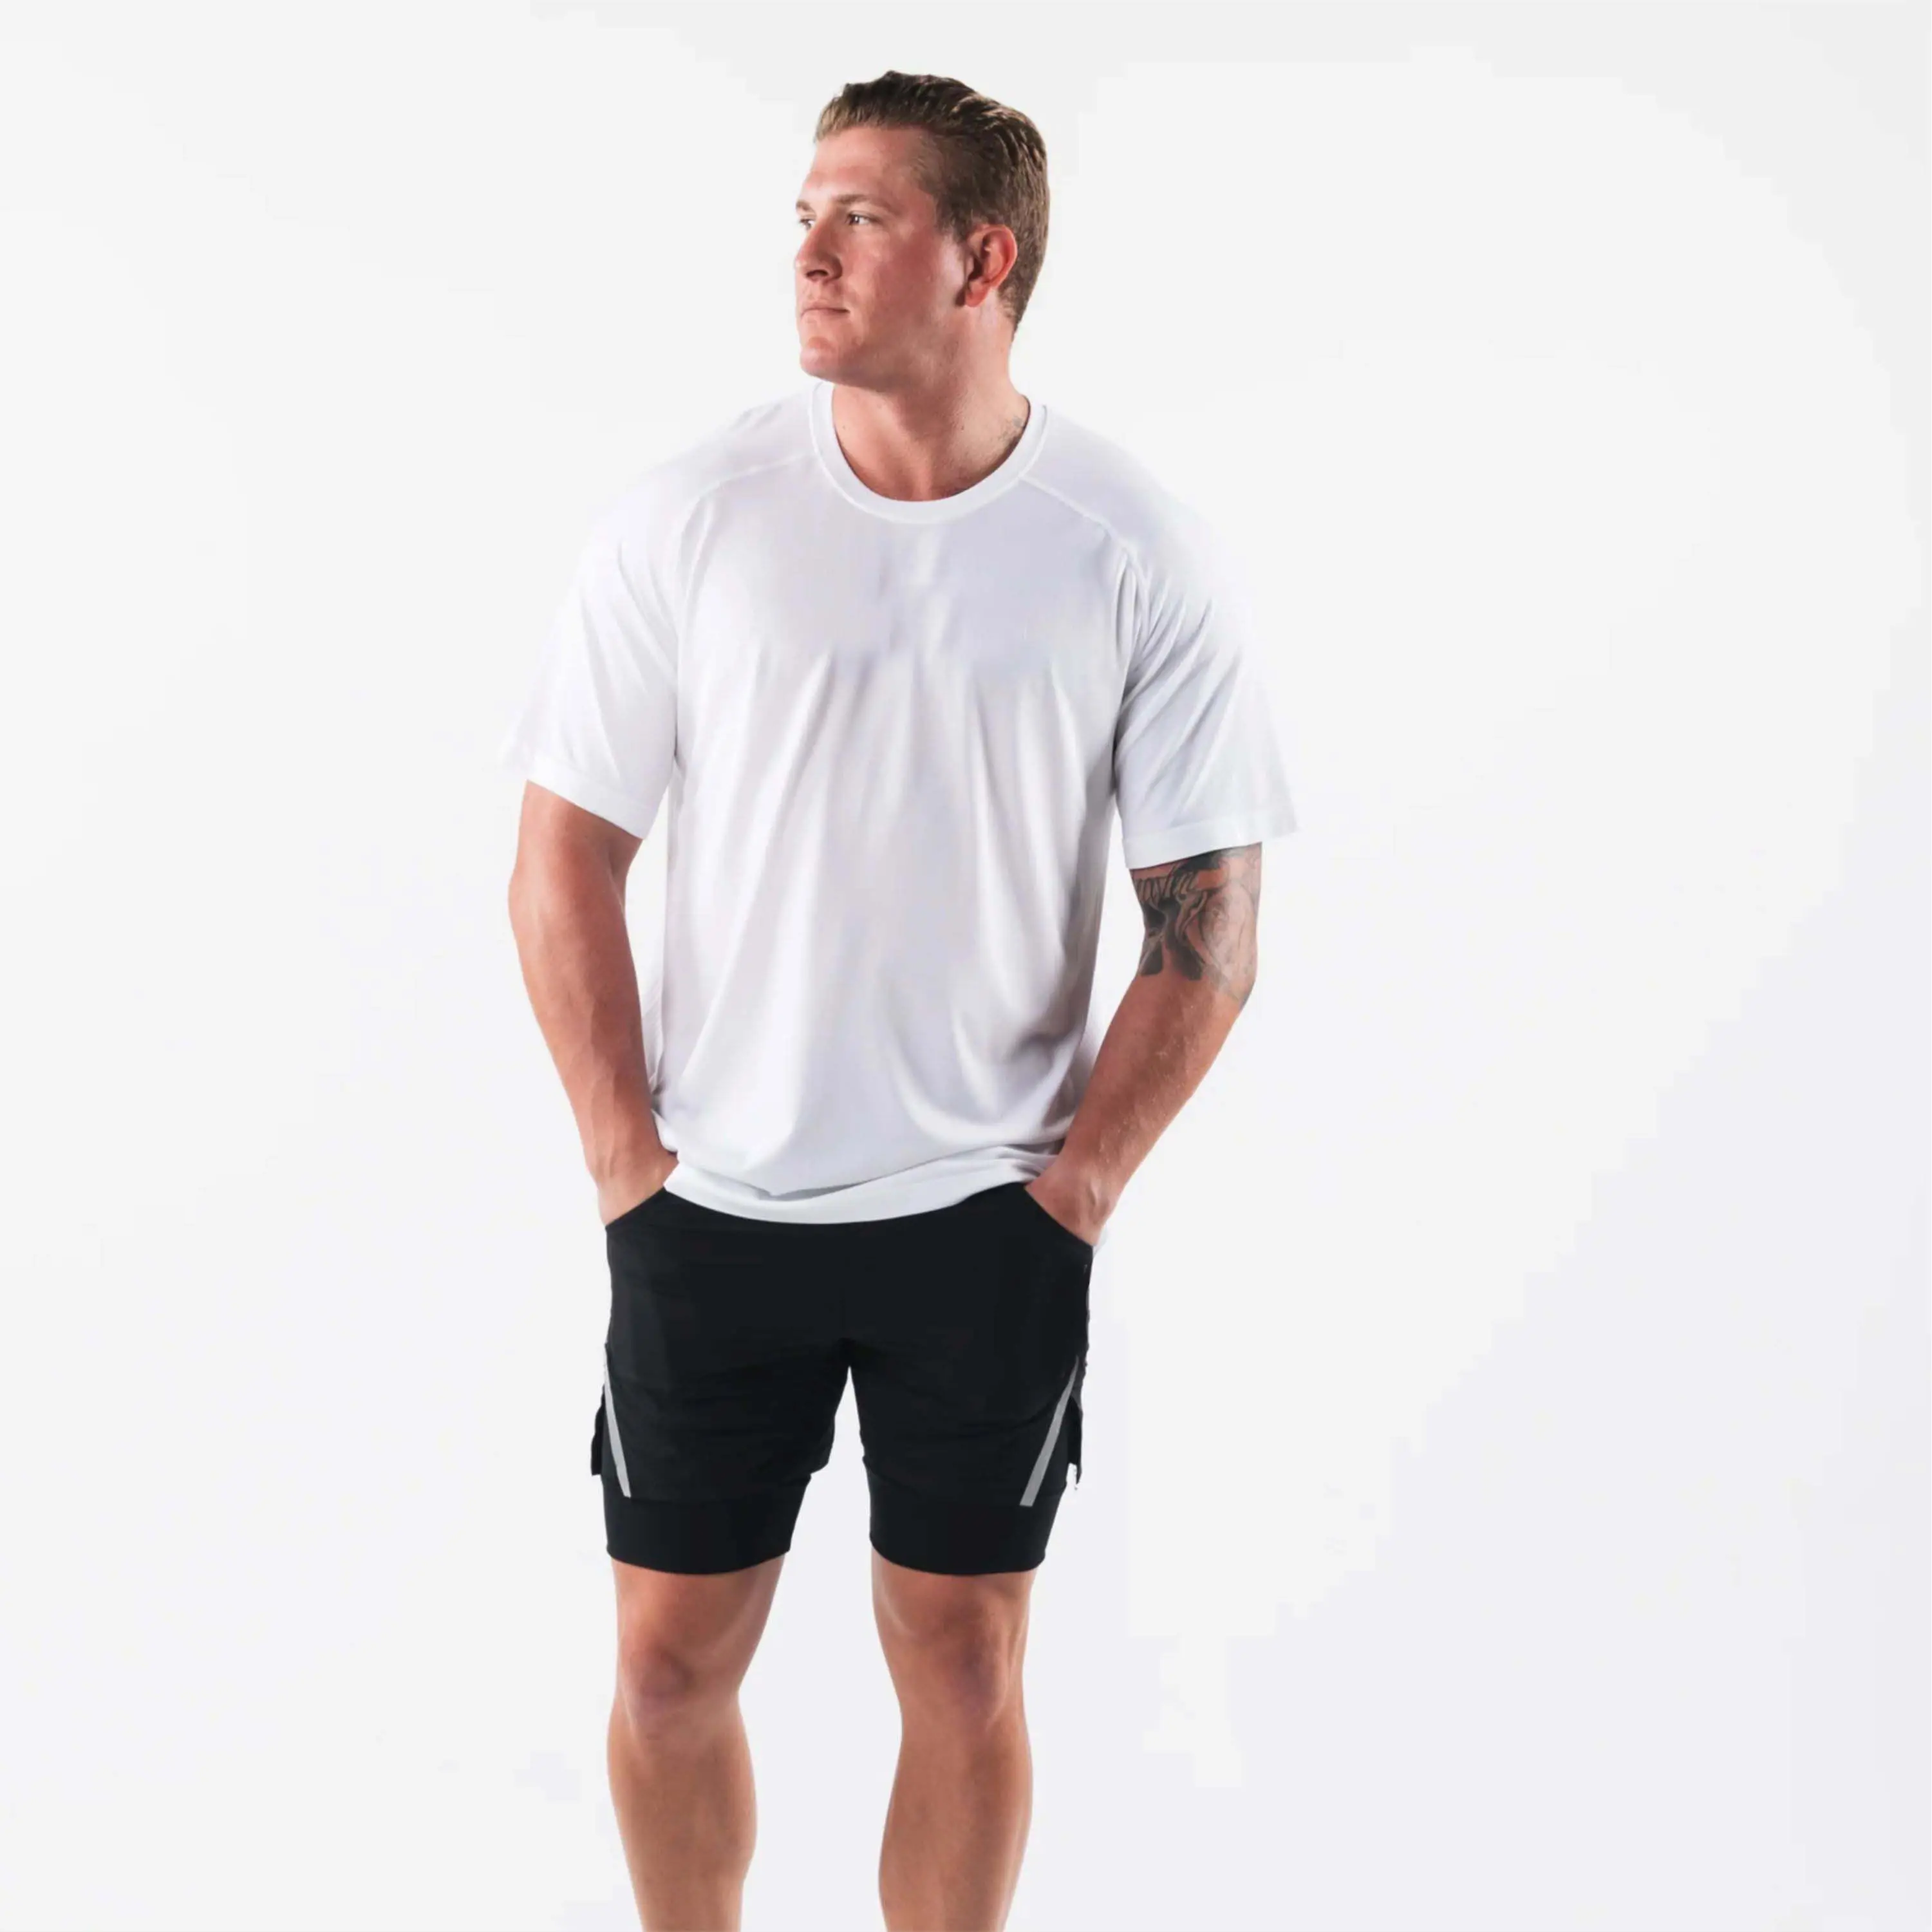 Kaus lengan pendek polos kasual pakaian atasan musim panas kaus katun olahraga Fitness Gym pria kaus ketat binaraga pria